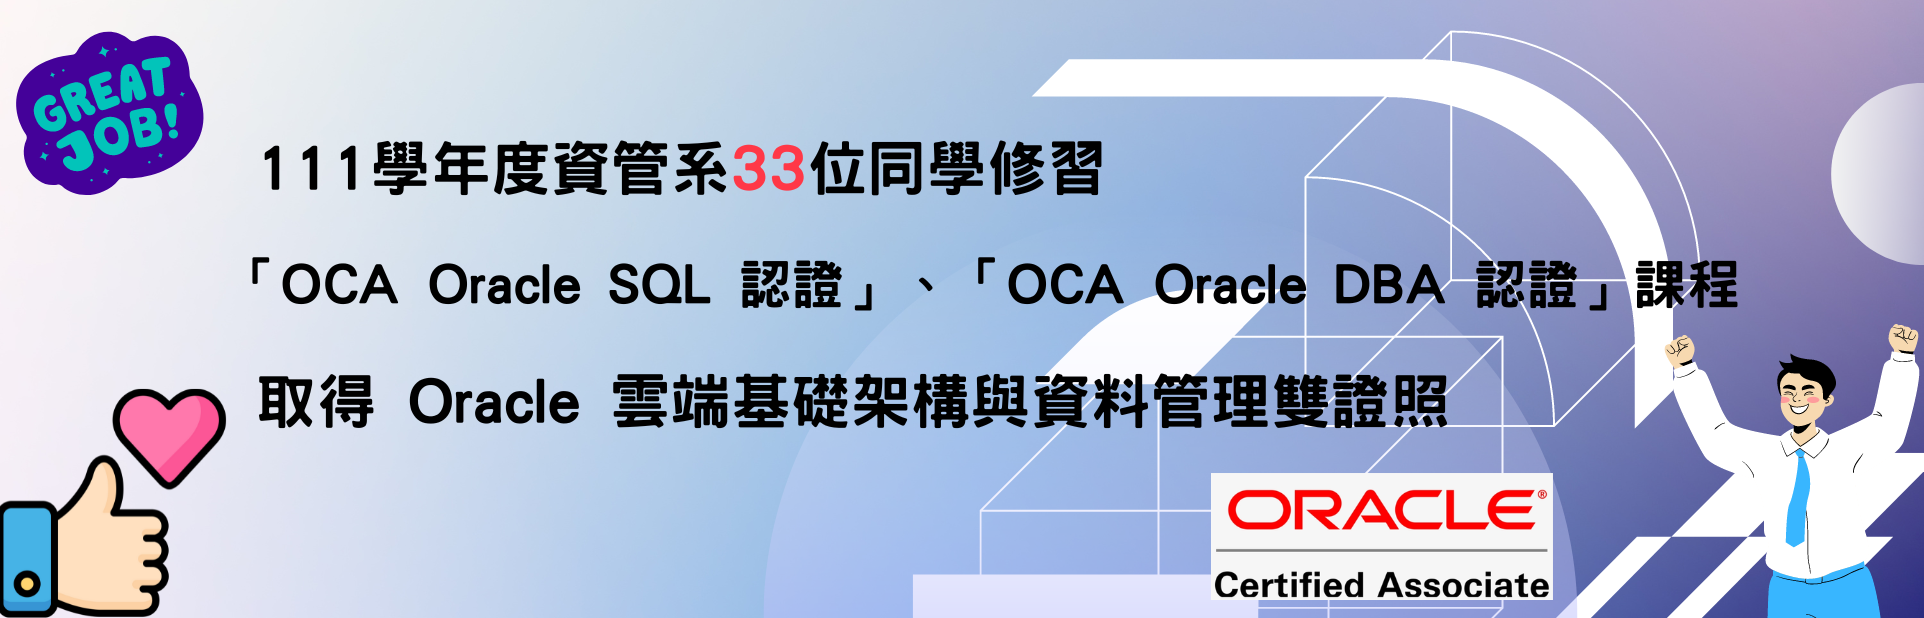 111學年度 資管系33 位同學修習「OCA Oracle SQL 認證」、「OCA Oracle DBA 認證」課程，取得 Oracle 雲端基礎架構與資料管理雙證照